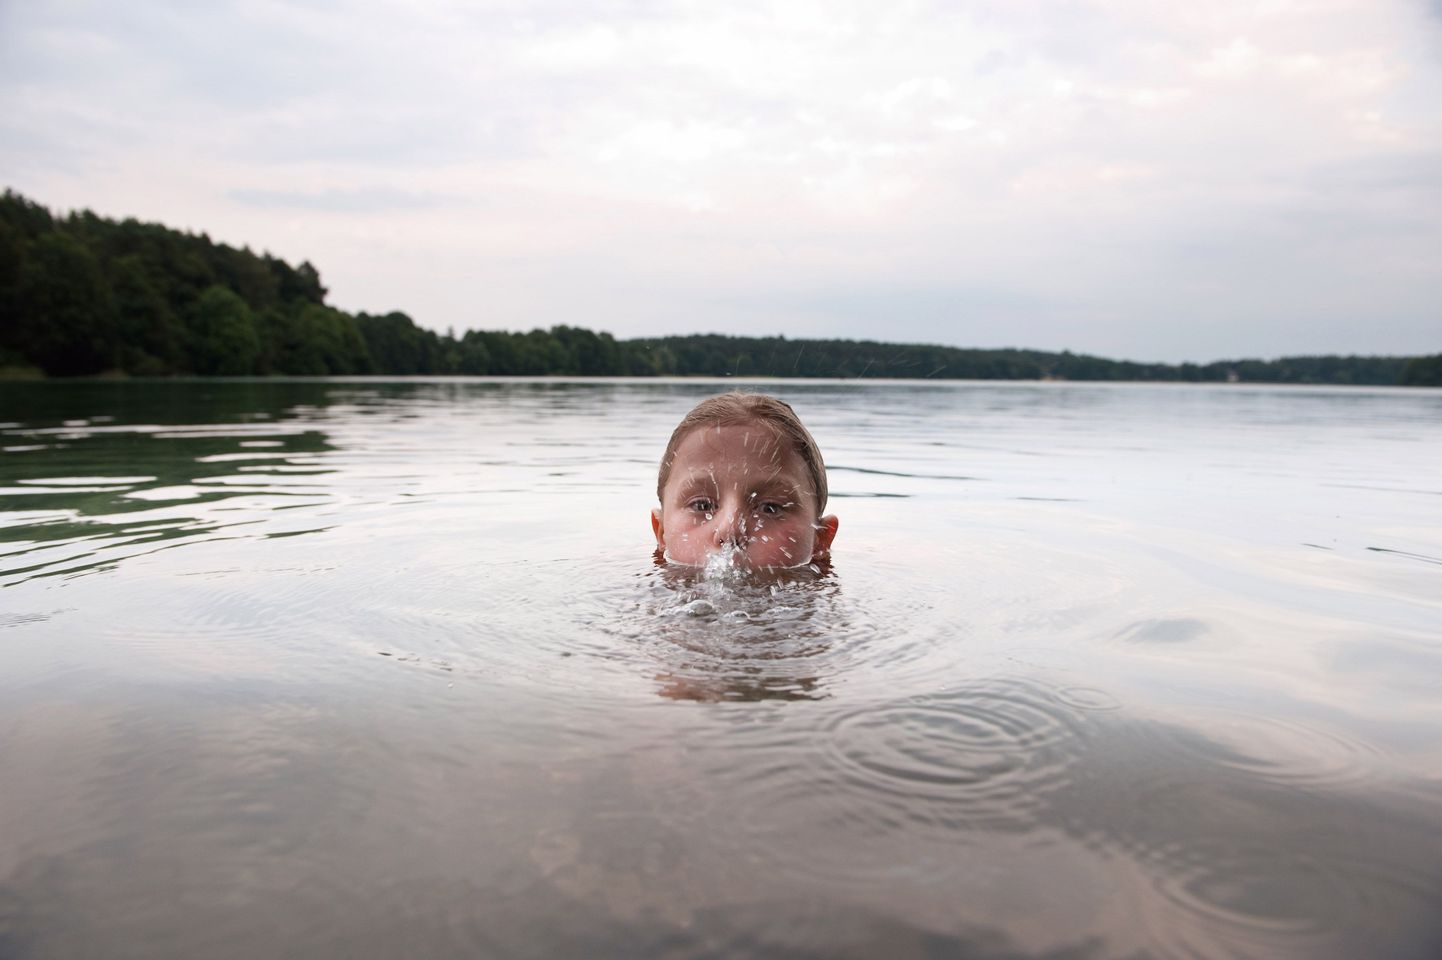 Laps võib uppuda ka kuival maal kuni 24 tundi pärast ujumist, sest kopsu sattunud vesi võib põhjustada põletikku.